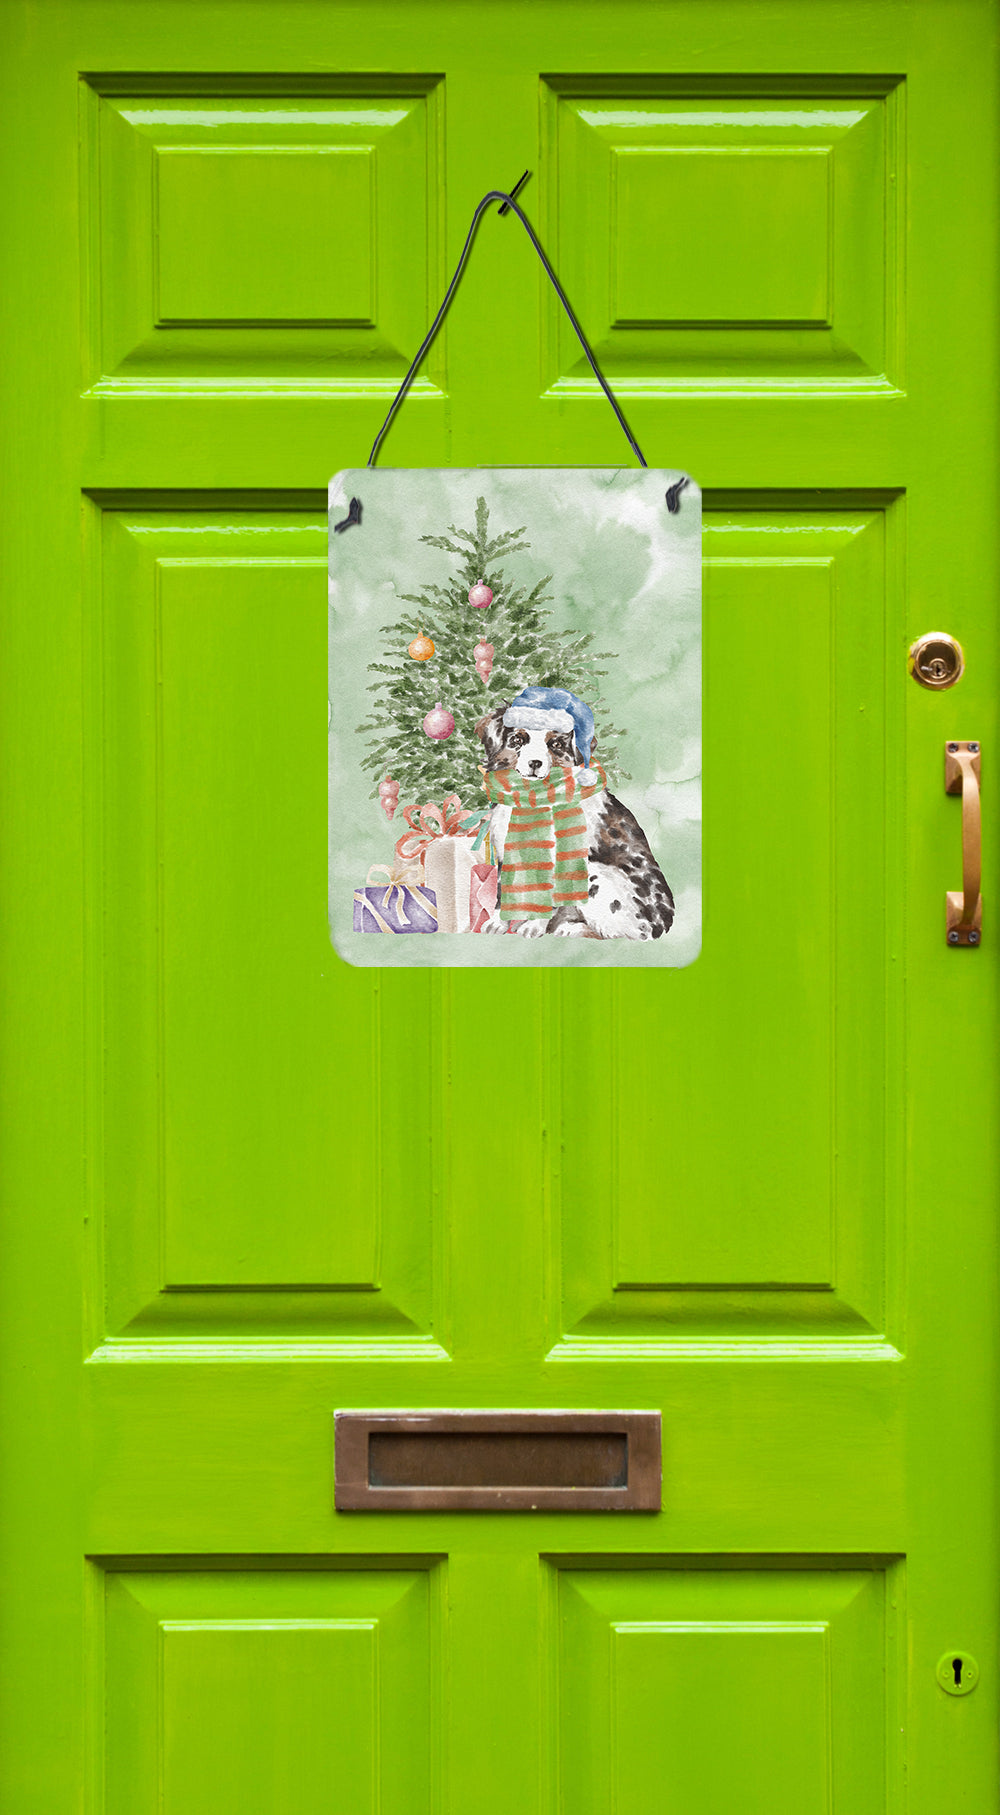 Buy this Christmas Australian Shepherd Puppy Wall or Door Hanging Prints